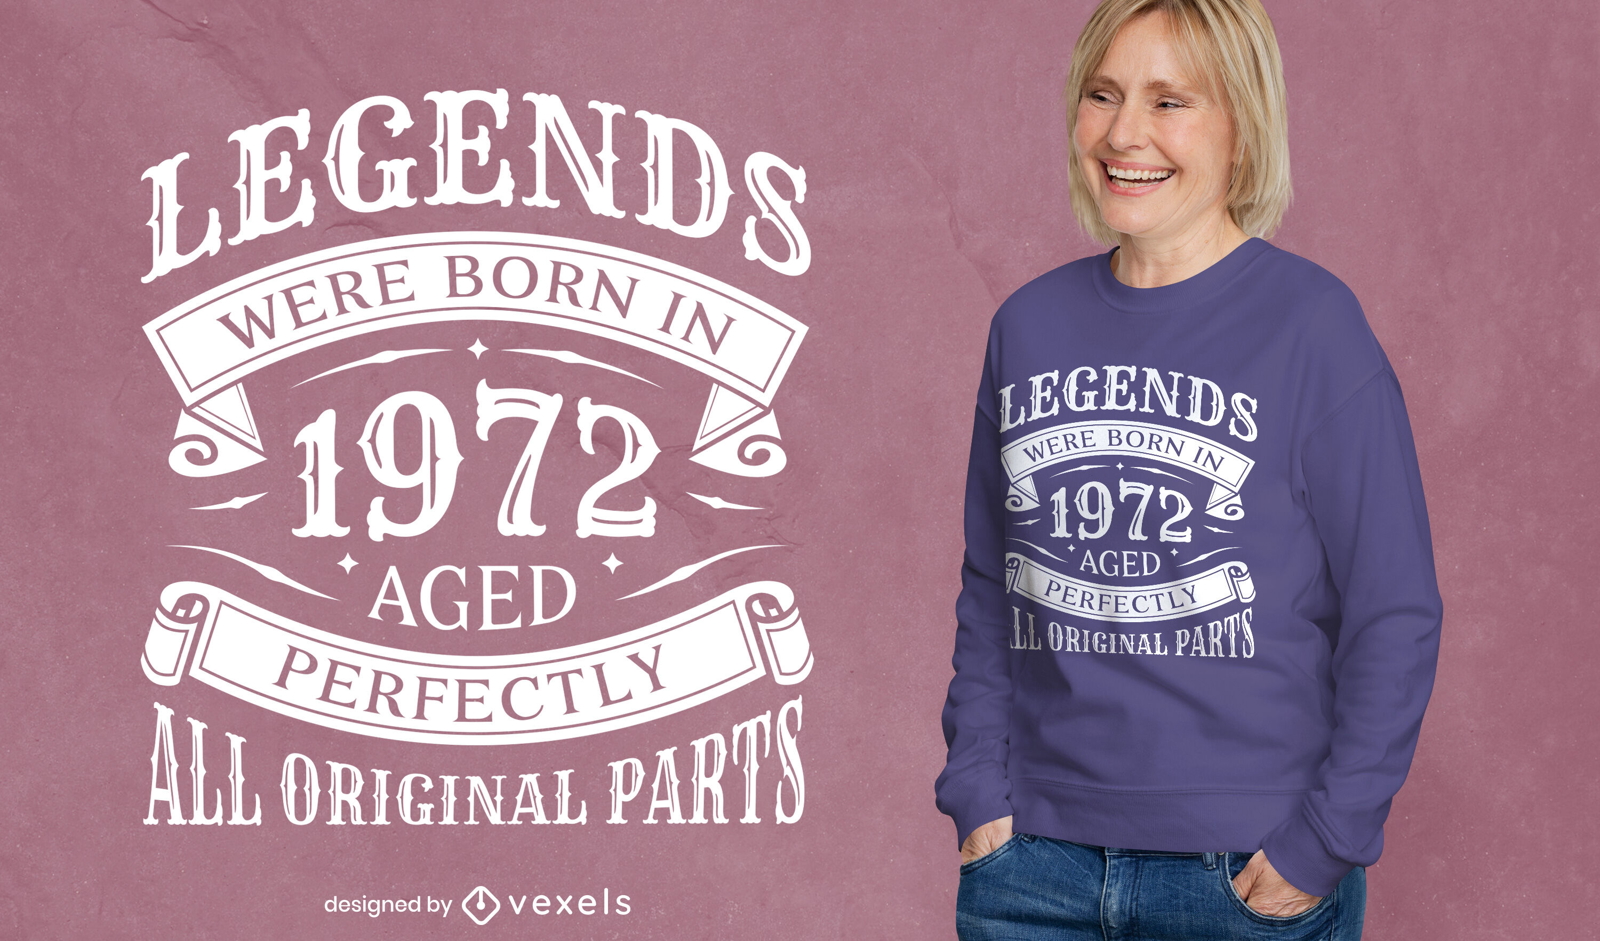 Legends were born t-shirt design